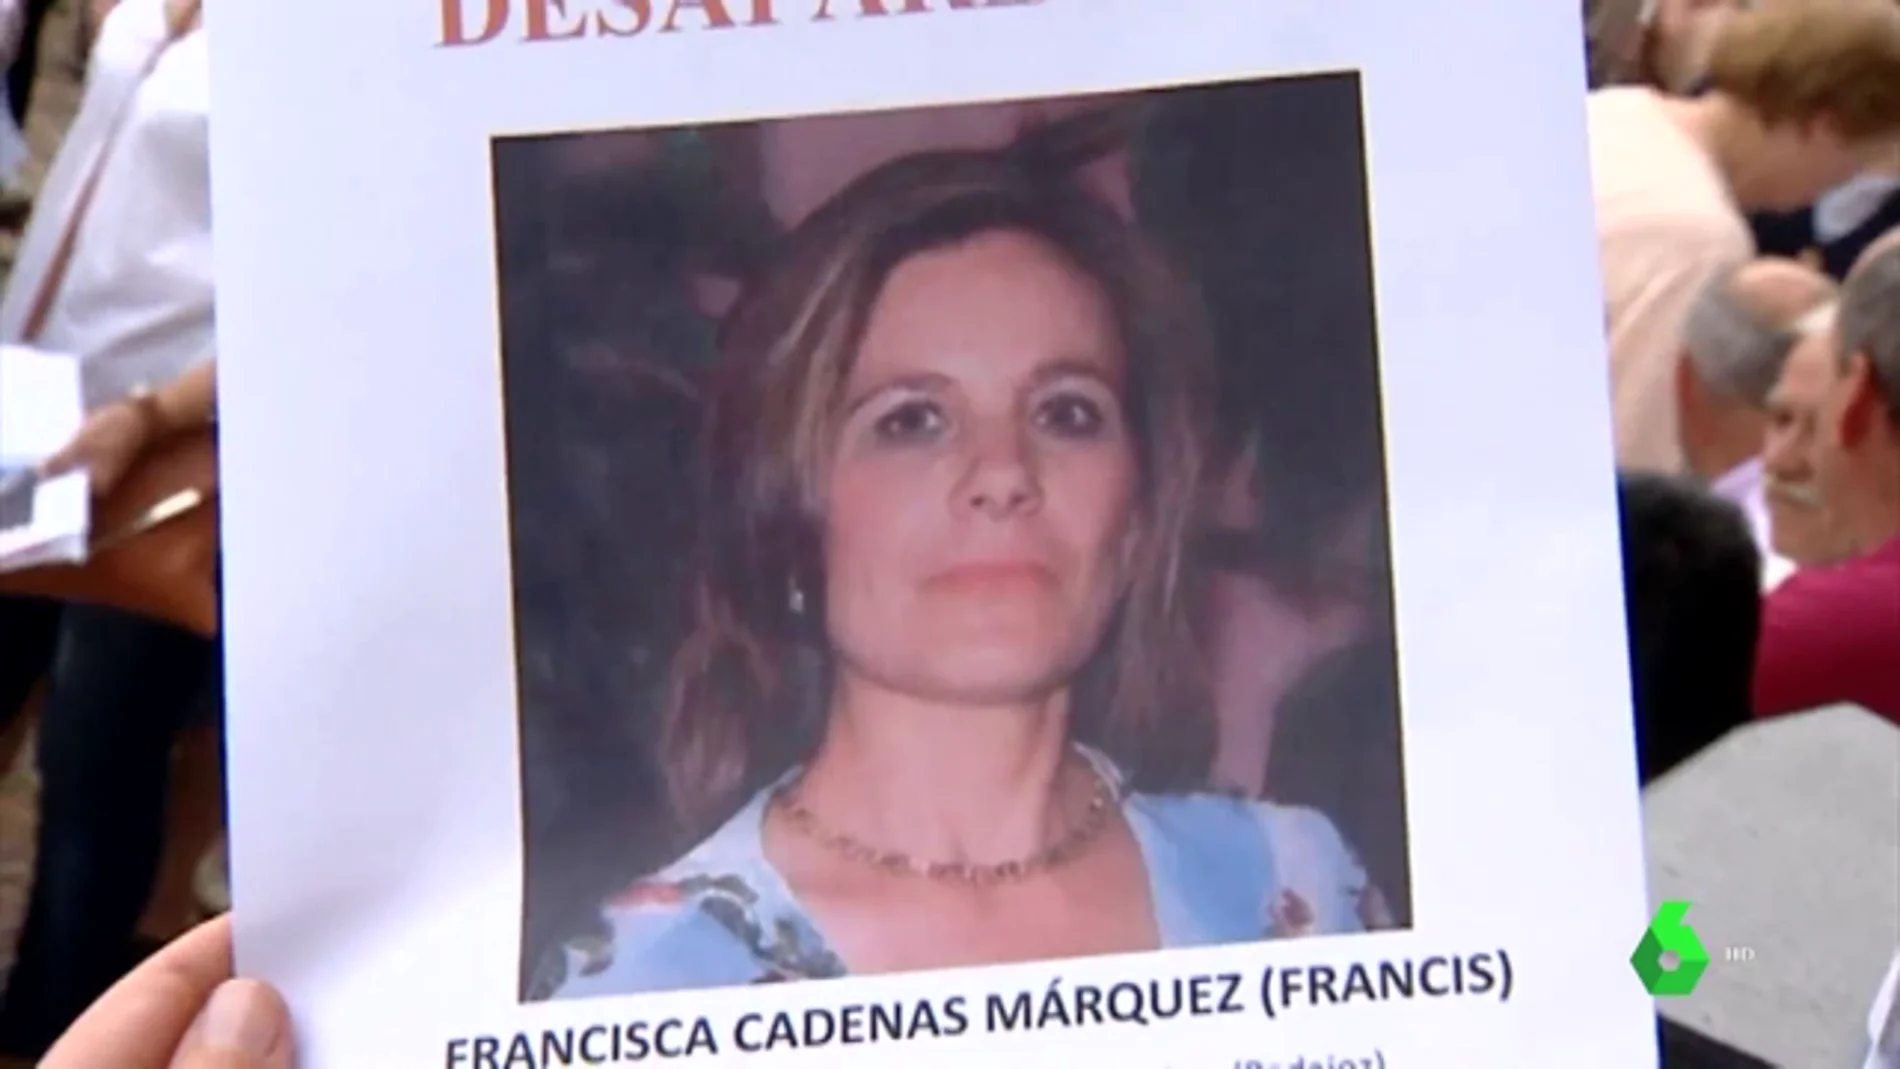 Francisca Cadenas